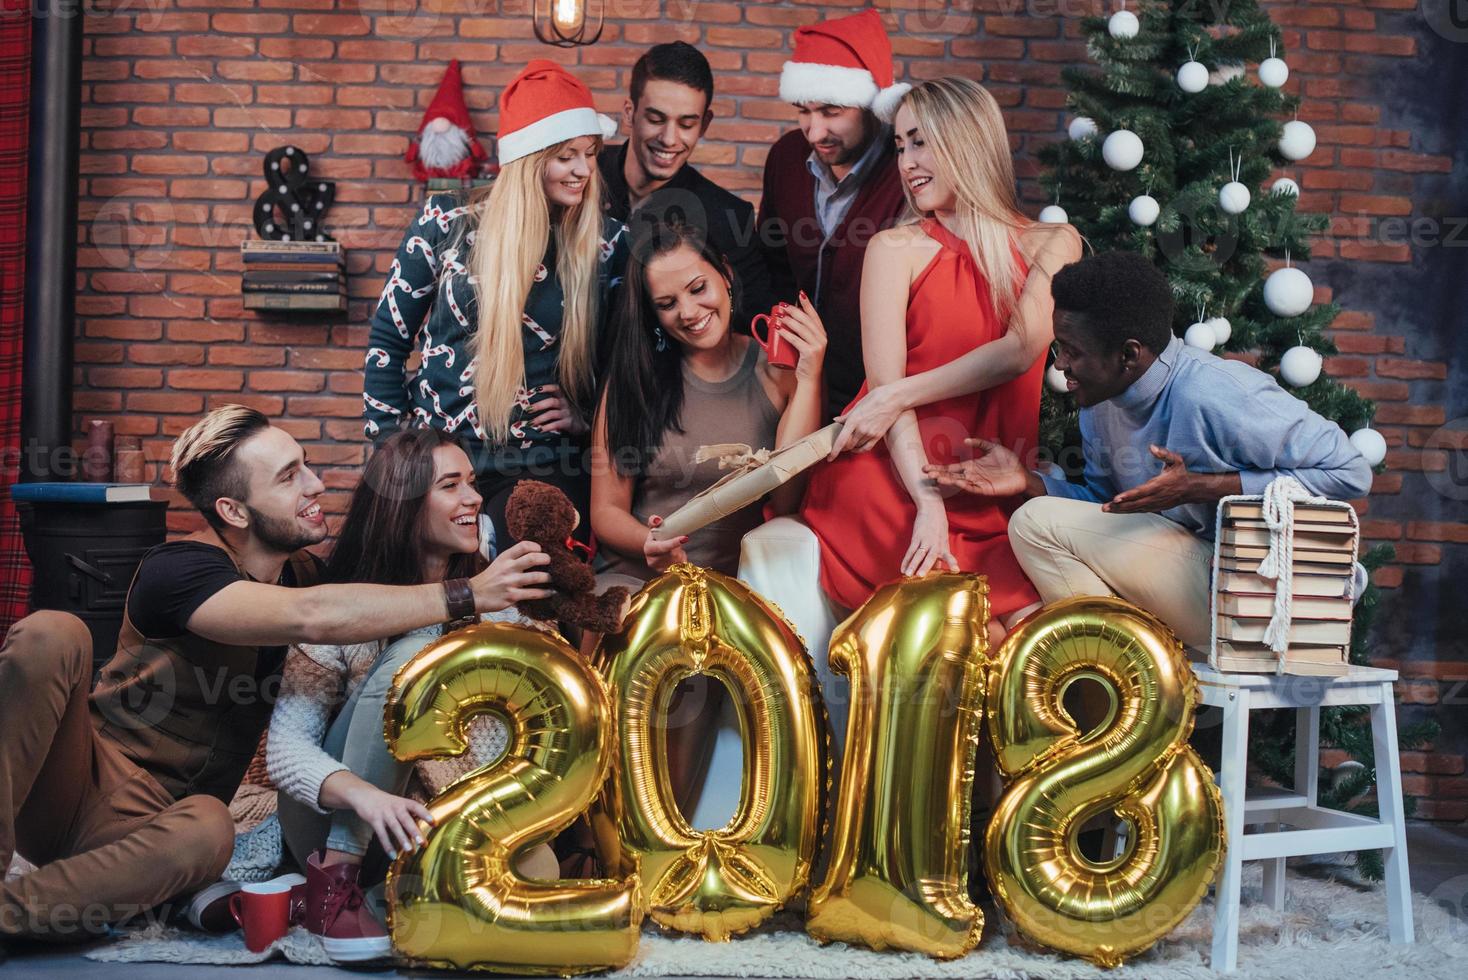 groep vrolijke oude vrienden communiceren met elkaar. het nieuwe jaar van 2018 komt eraan. het nieuwe jaar vieren in een gezellige huiselijke sfeer foto